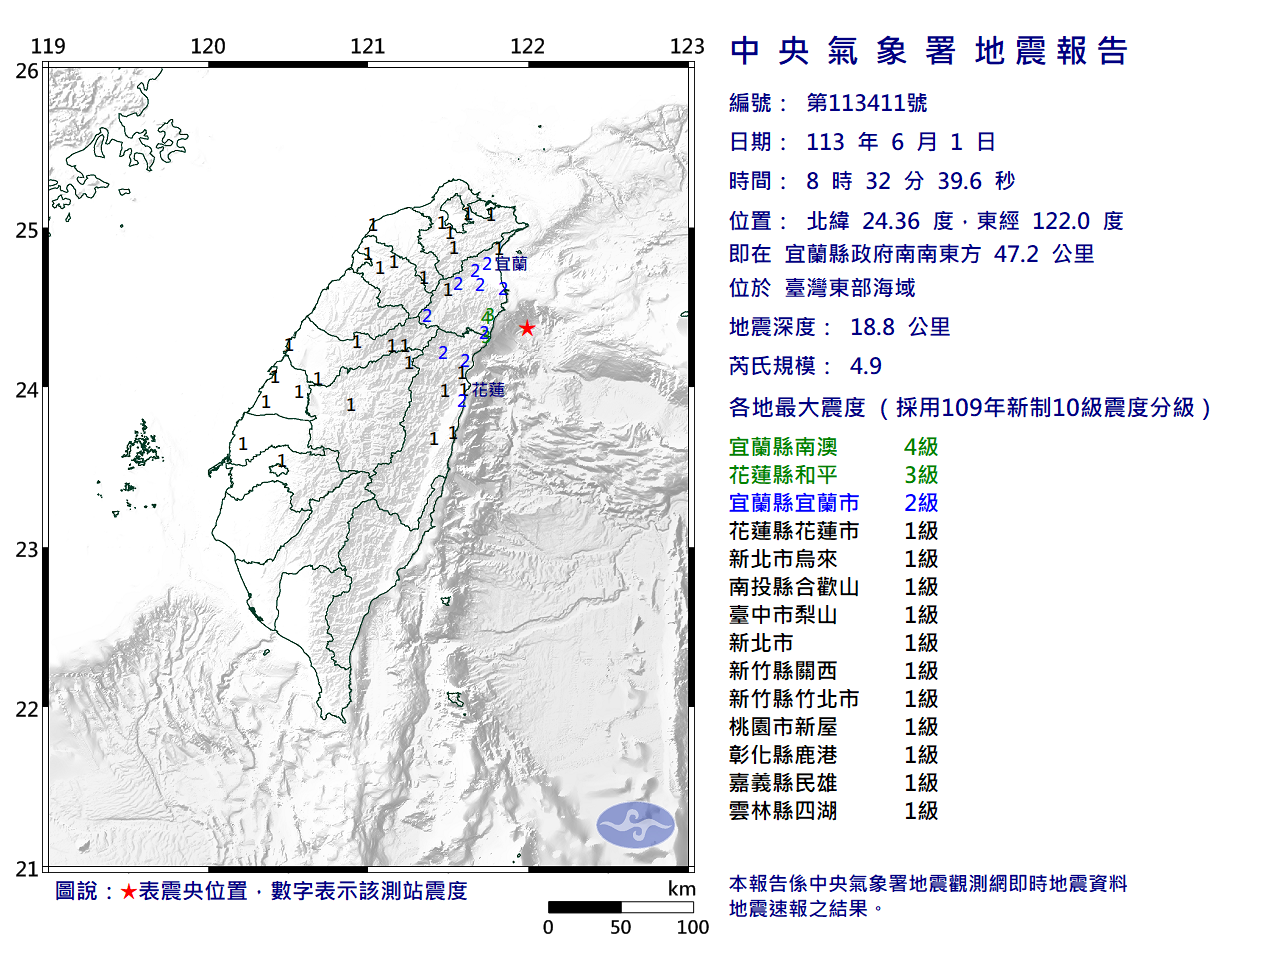 東部海域規模4.9地震 最大震度宜蘭4級